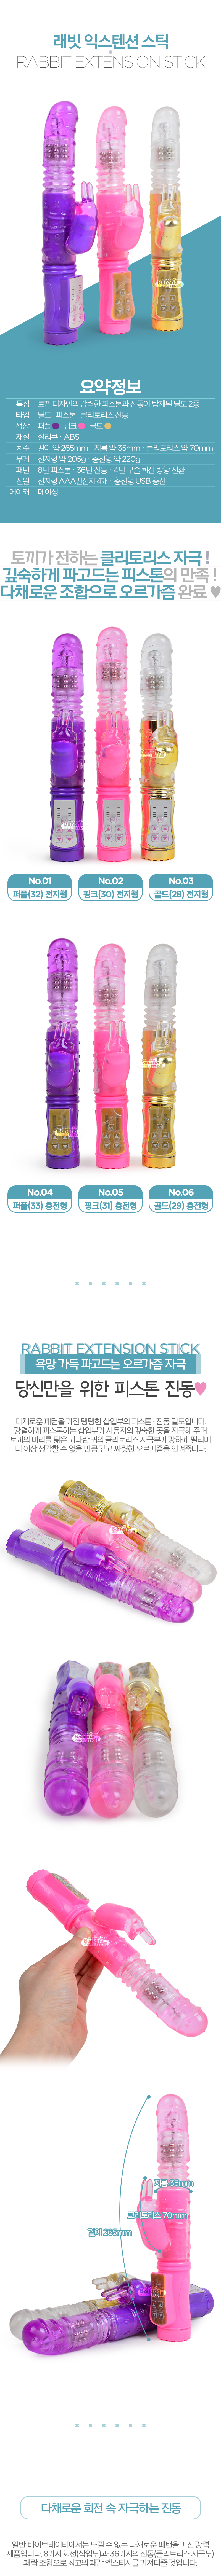 [8단 피스톤+36단 진동] 래빗 익스텐션 스틱(Rabbit Extension Stick)